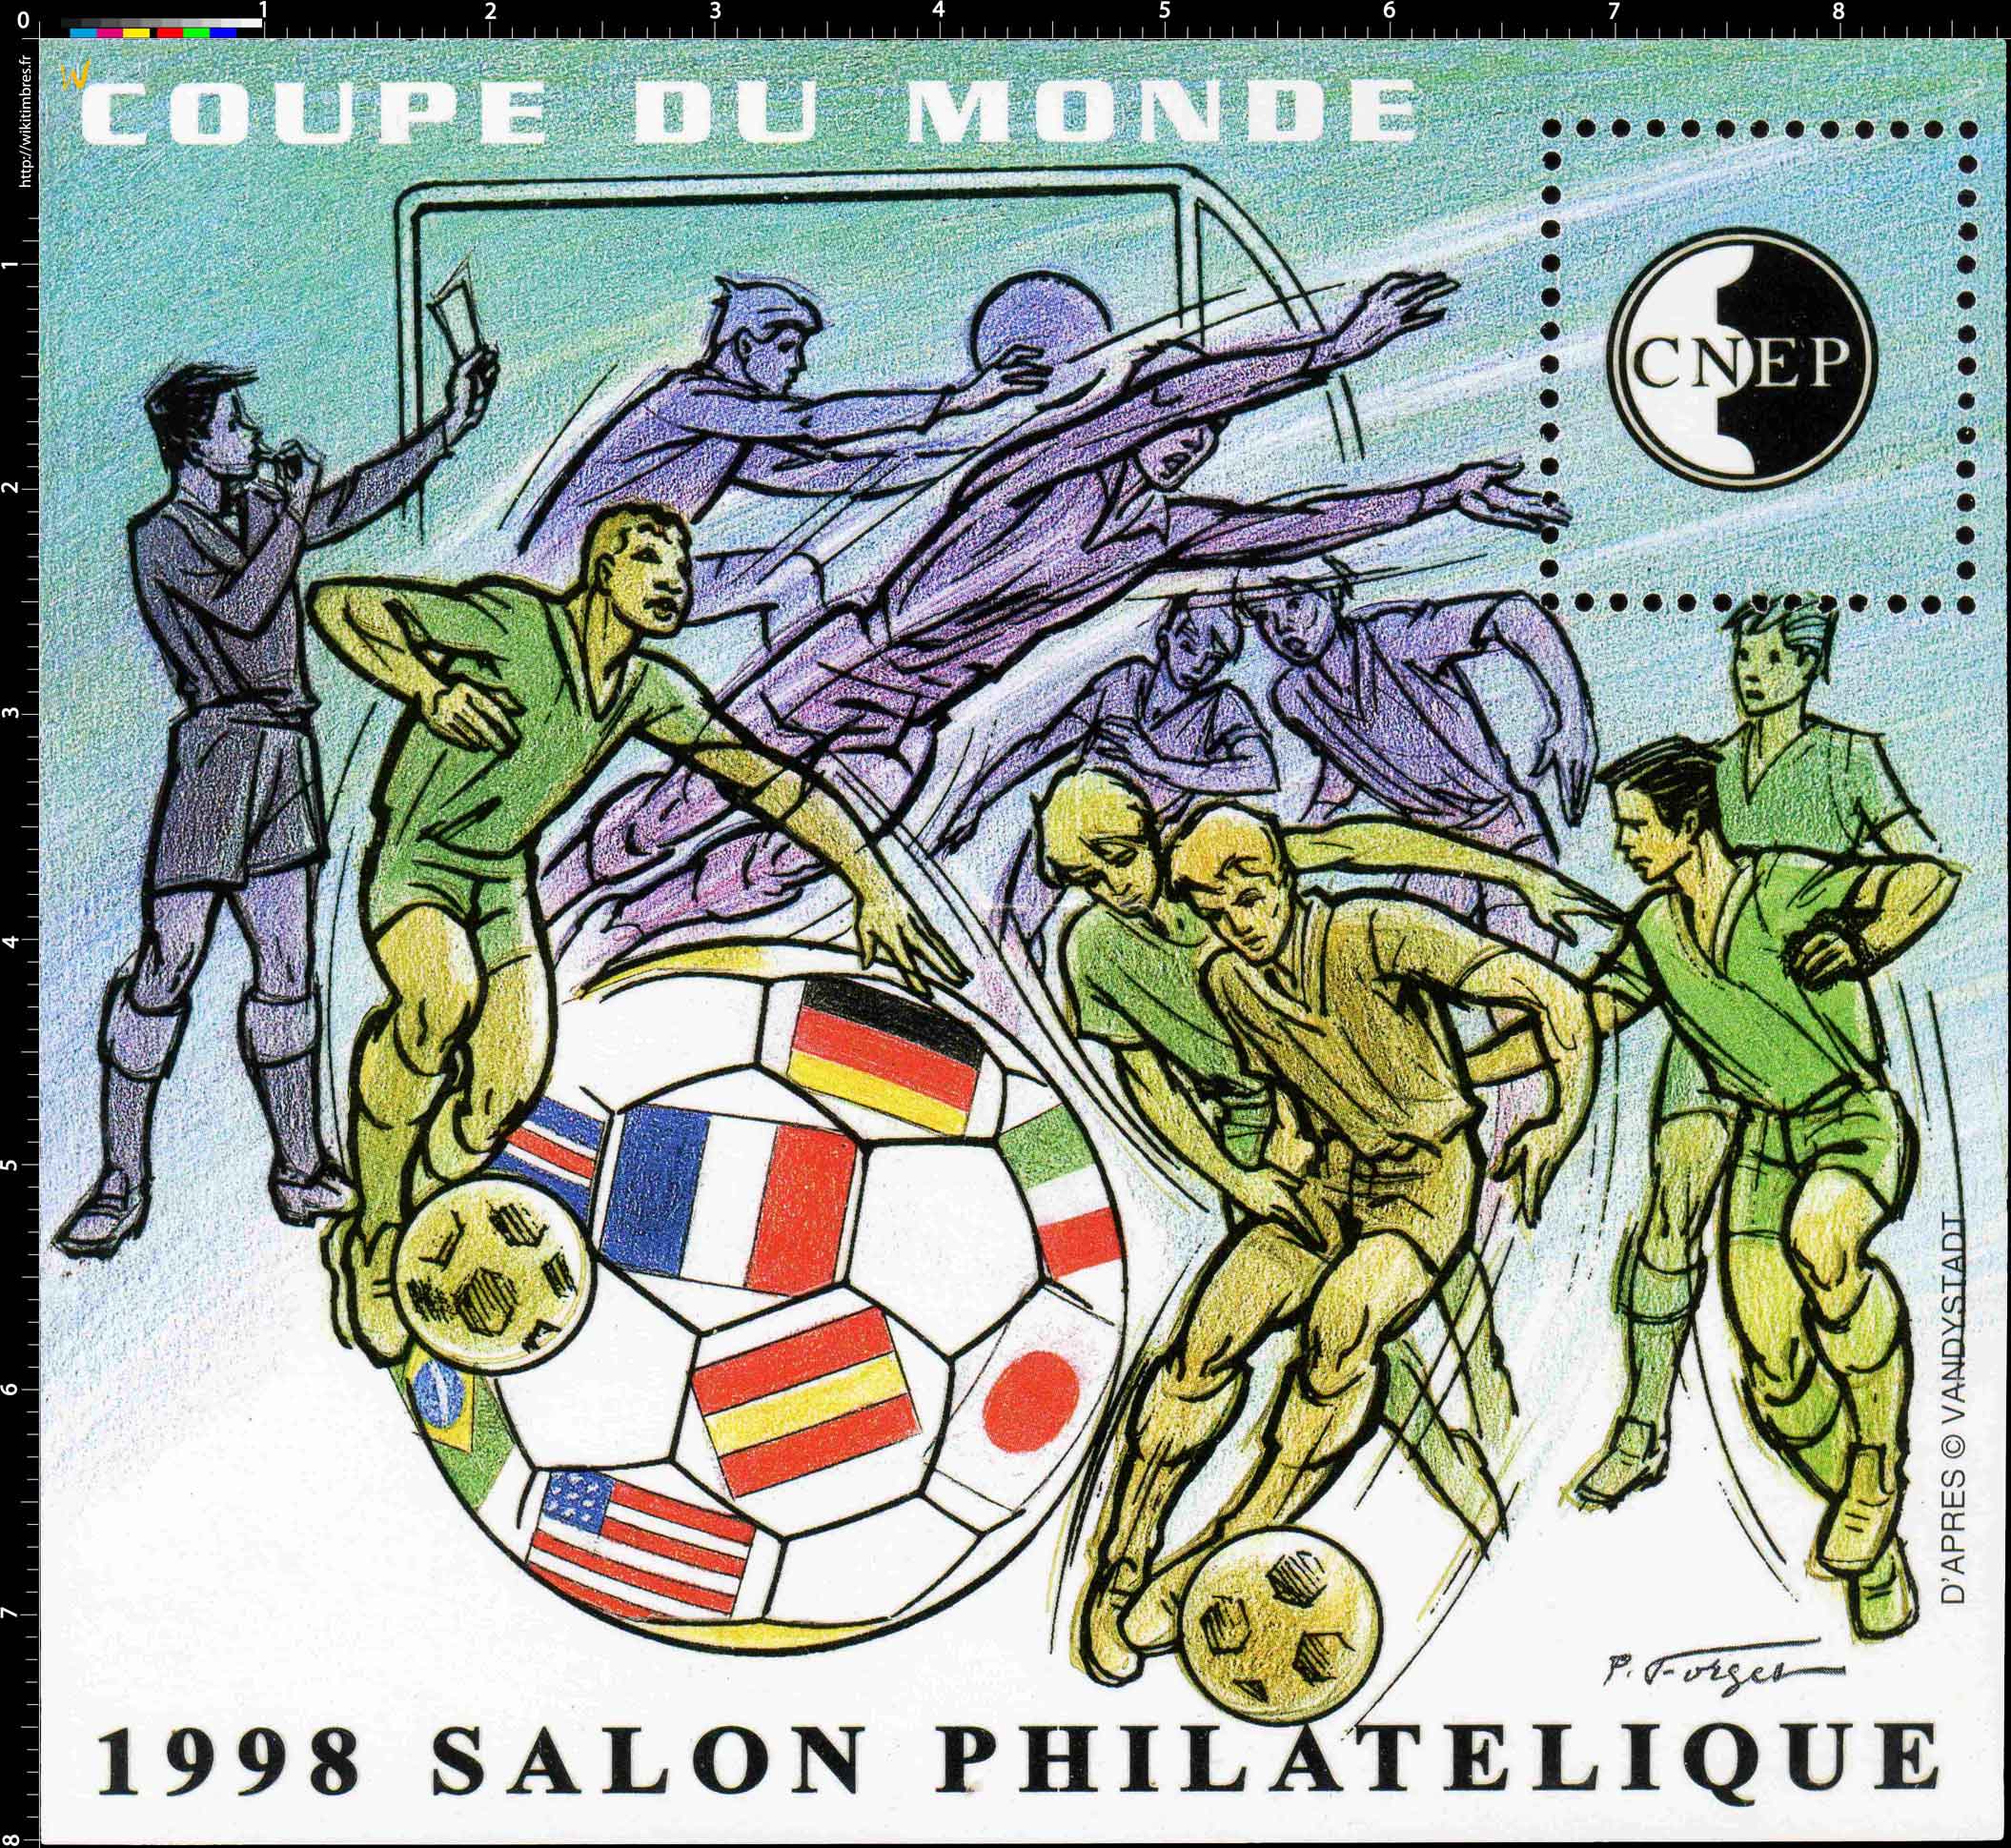 1998 Salon philatélique de Lyon CNEP